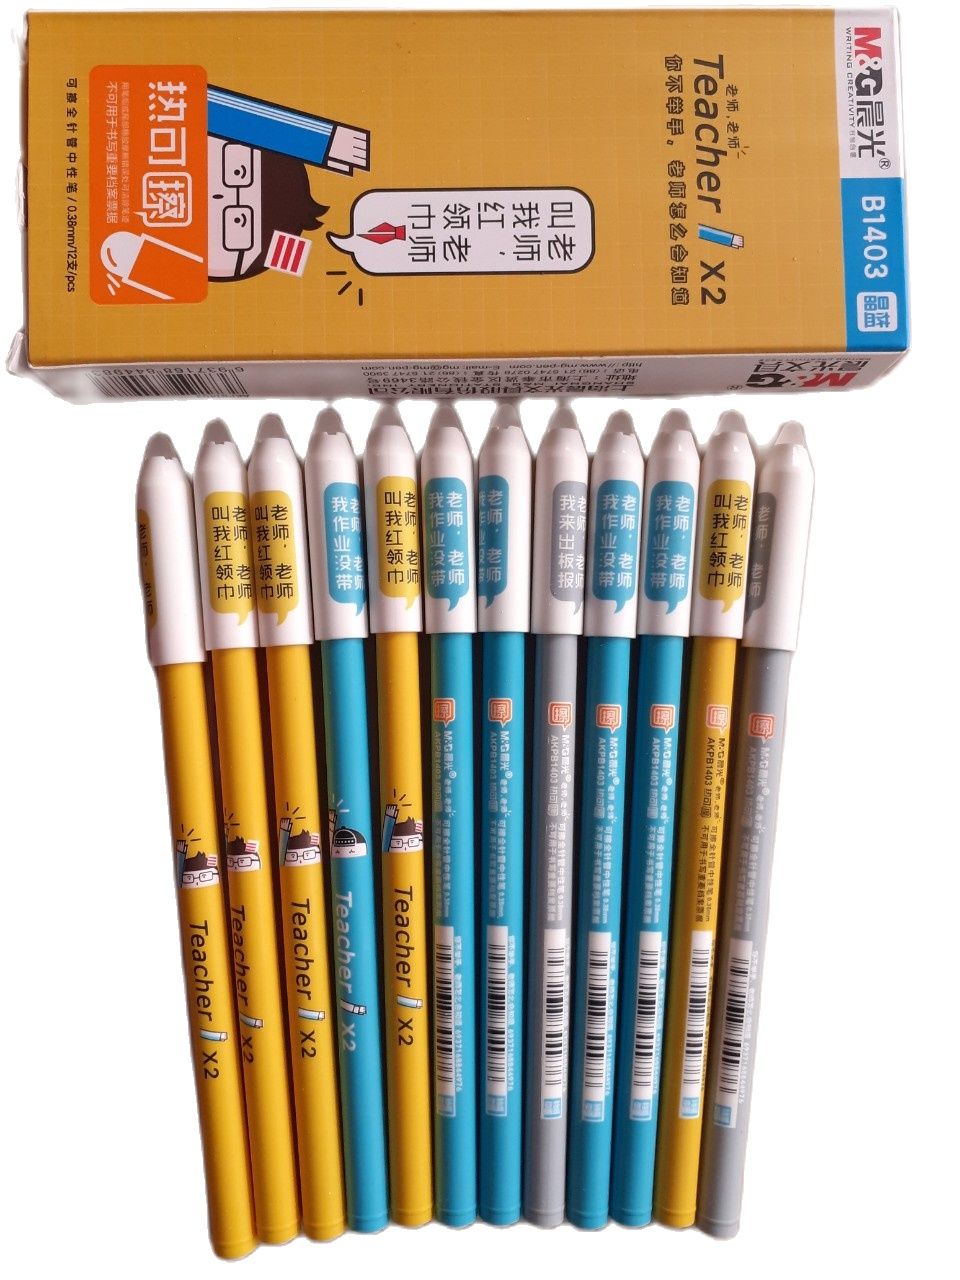 Màu Vàng Bút Chì - hình ảnh bút chì png tải về - Miễn phí trong suốt Bút Chì  png Tải về.